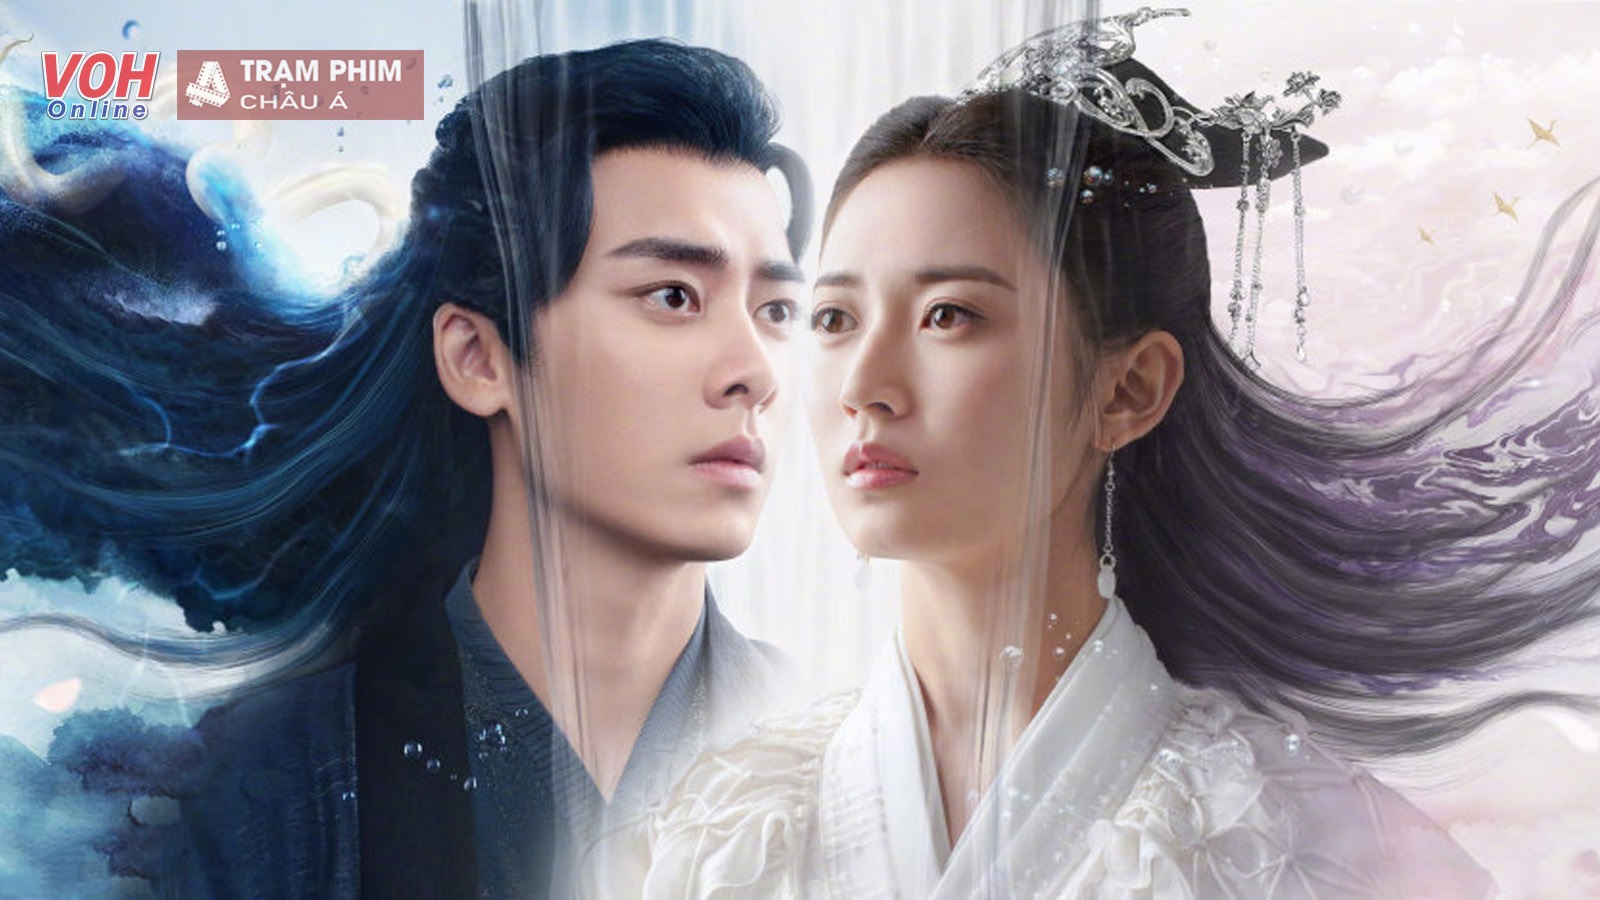 Phim của Vương Nhất Bác, Dương Tử “áp chót” top 10 phim Hoa ngữ hot nhất tháng 1 - Ảnh 4